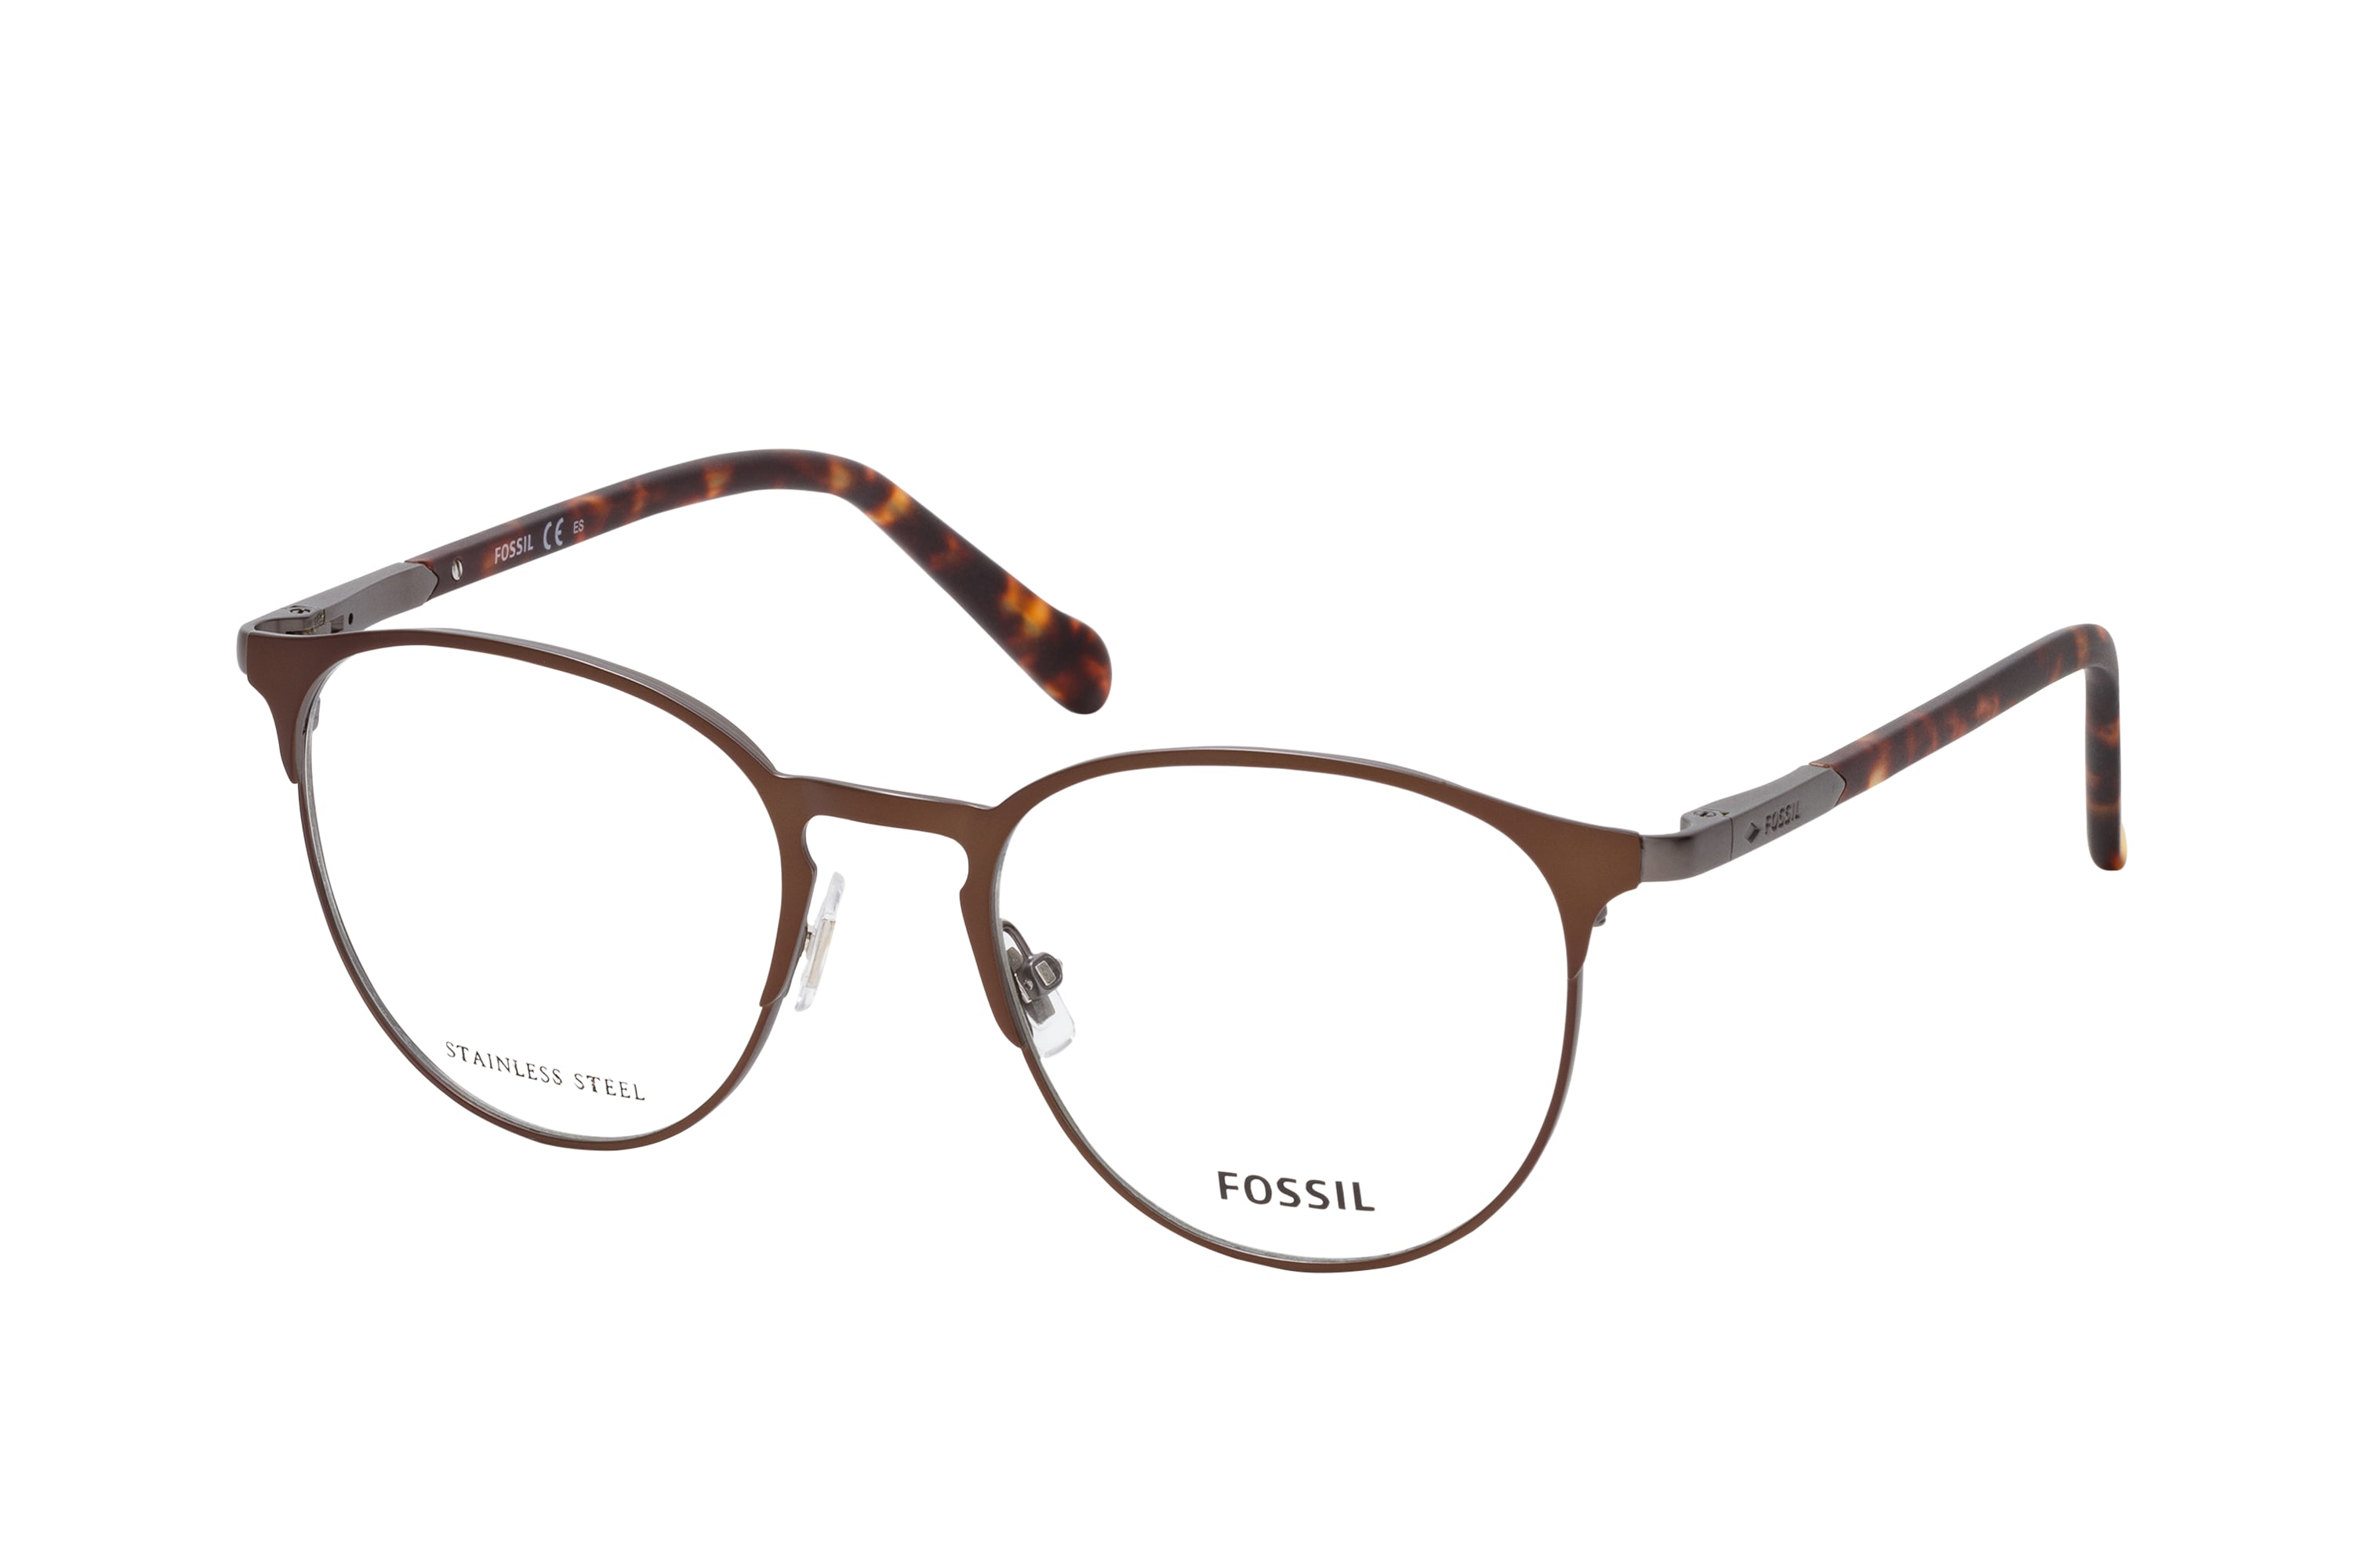 Buy Fossil FOS 7117 1OT Glasses